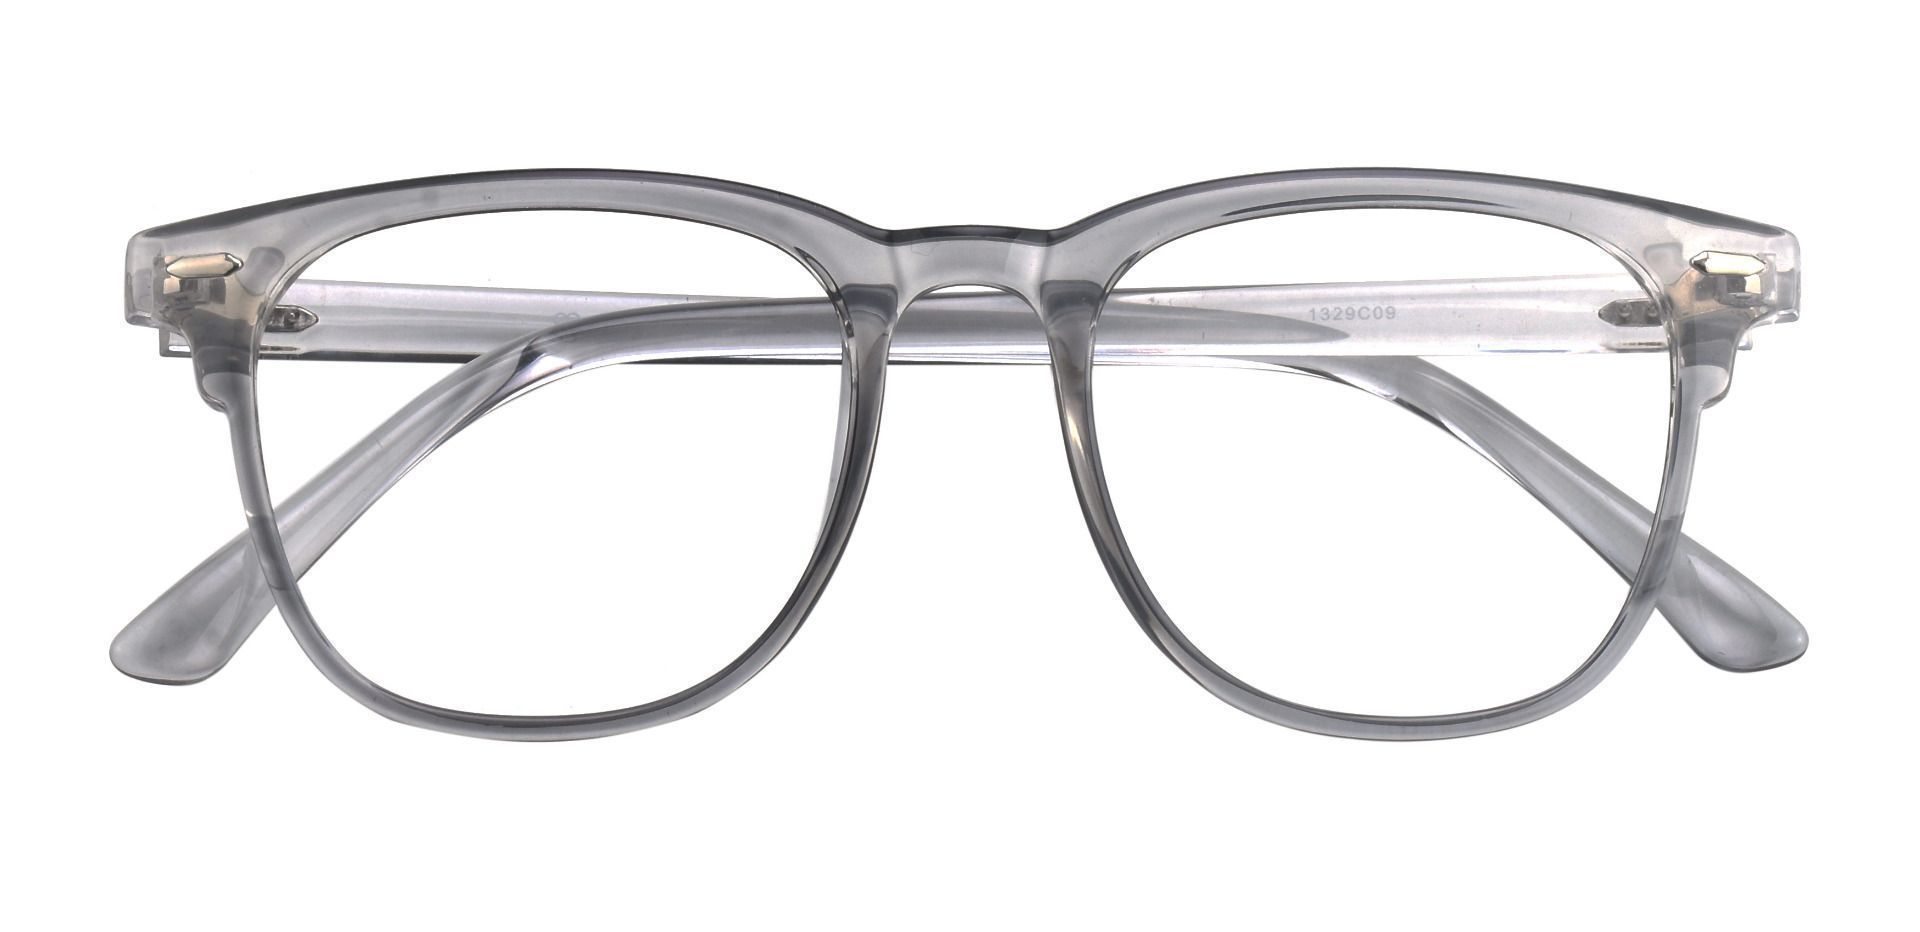 Bento Browline Prescription Glasses - Clear